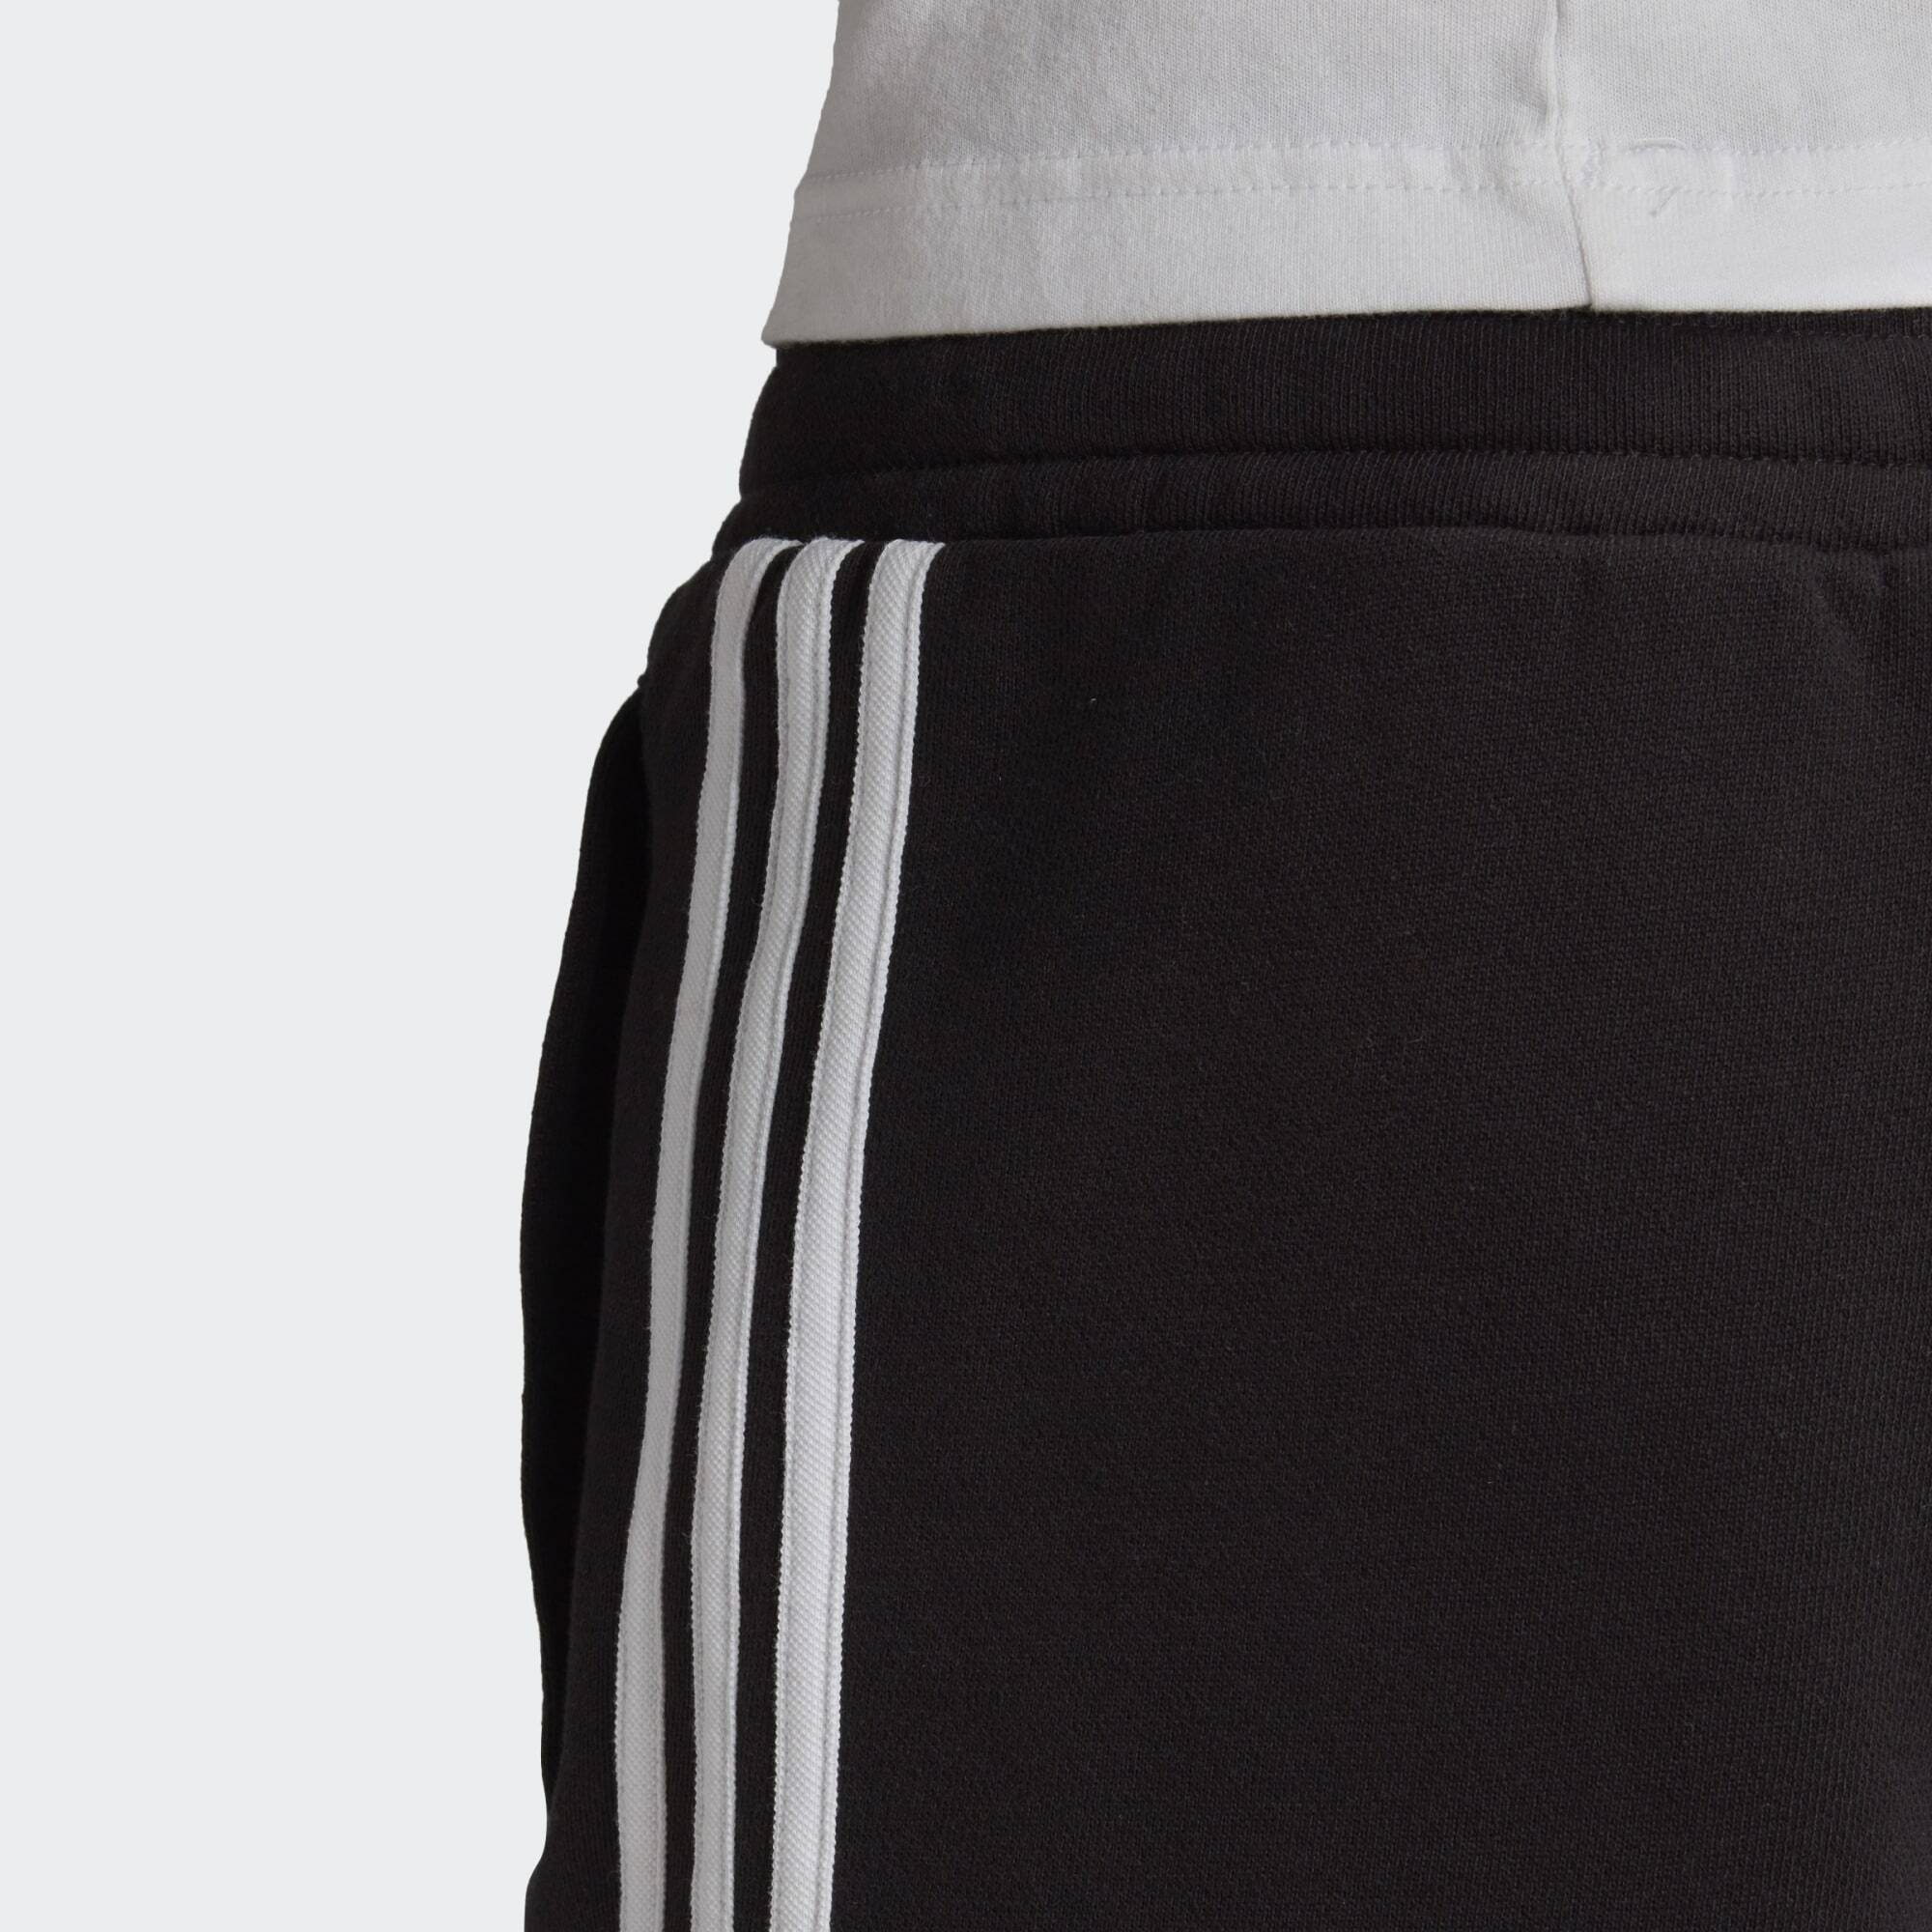 adidas Originals SHORTS Black SWEAT 3-STREIFEN Shorts